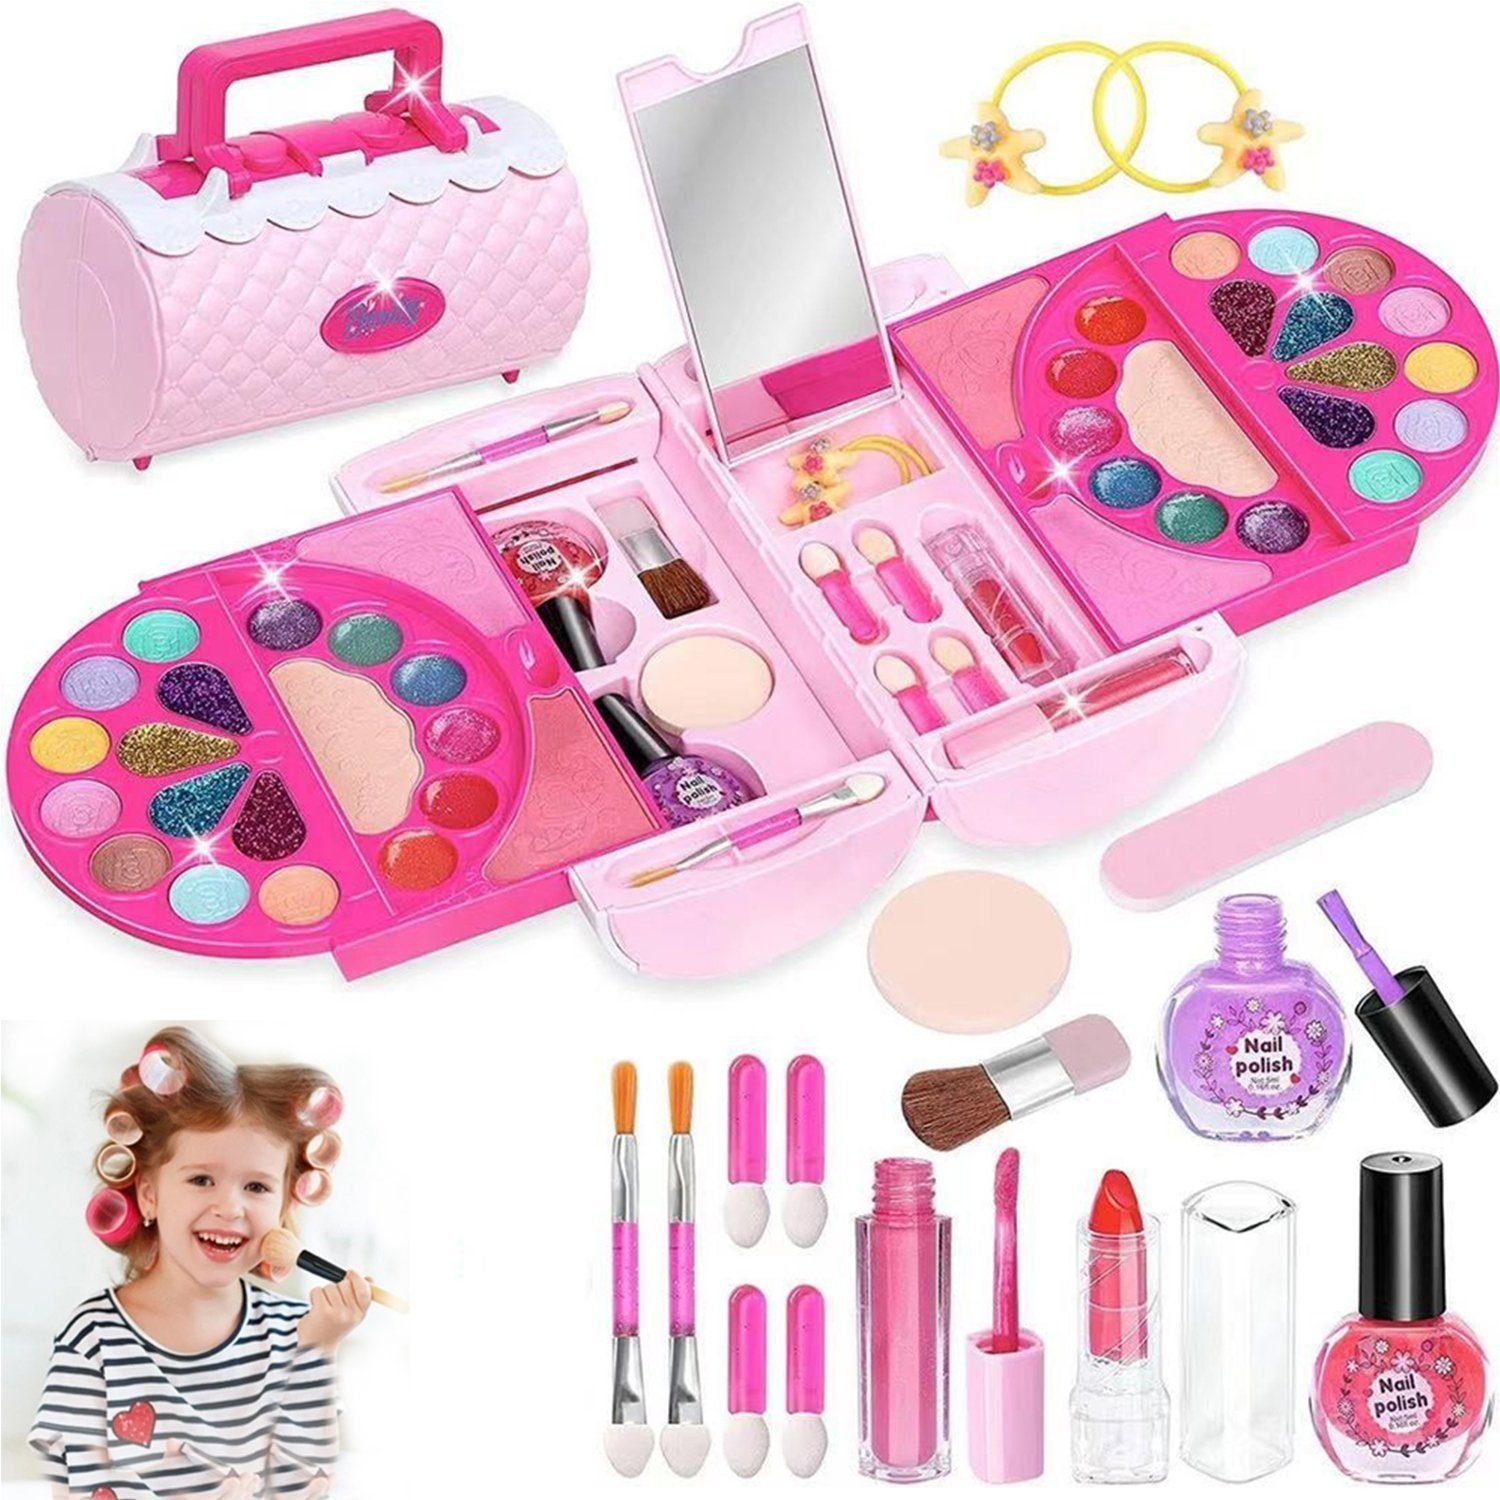 Kaufe Kinder Make-Up Spielzeug Kit Für Mädchen Waschbar Kosmetik